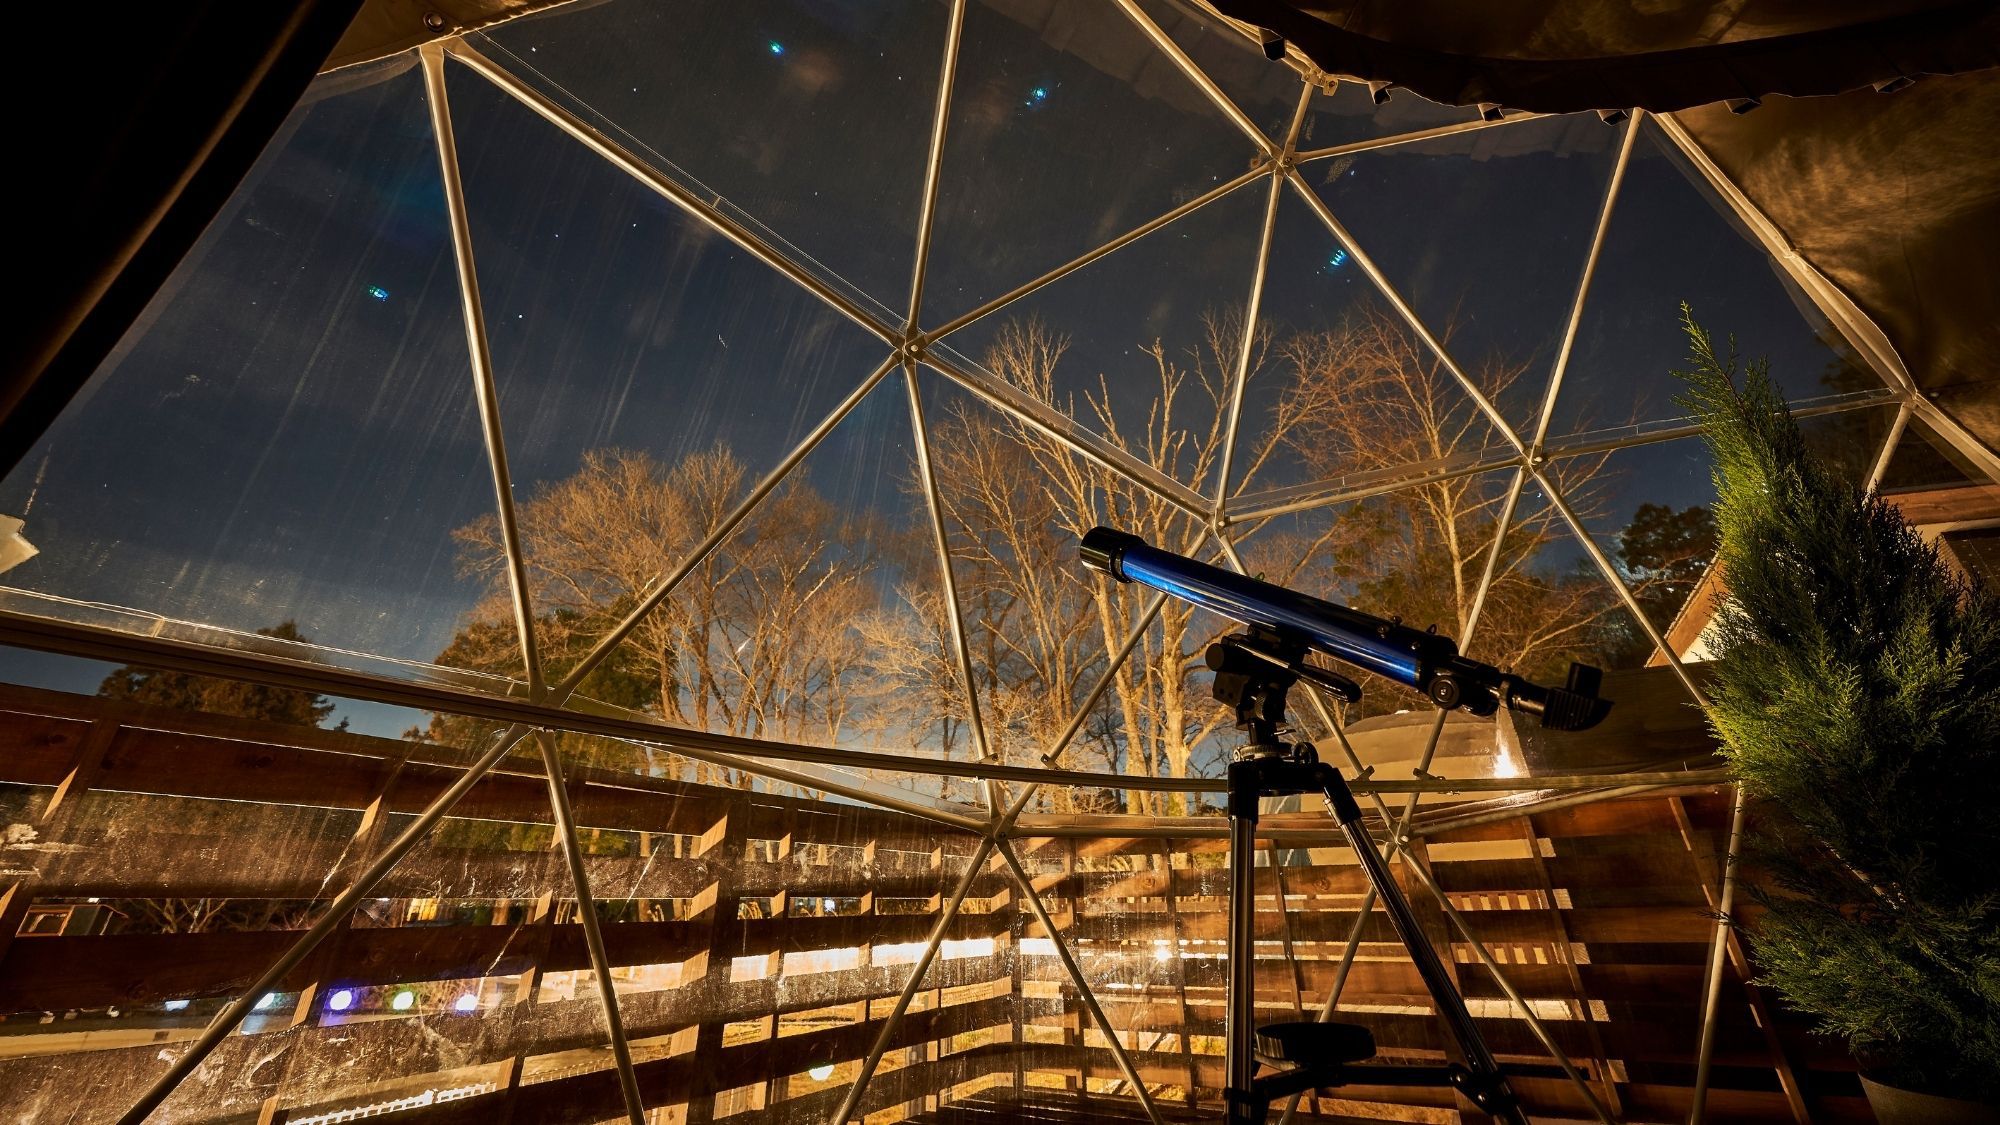 【アステール】星空がテーマで、望遠鏡も装備。幅広い層から人気のドームテント